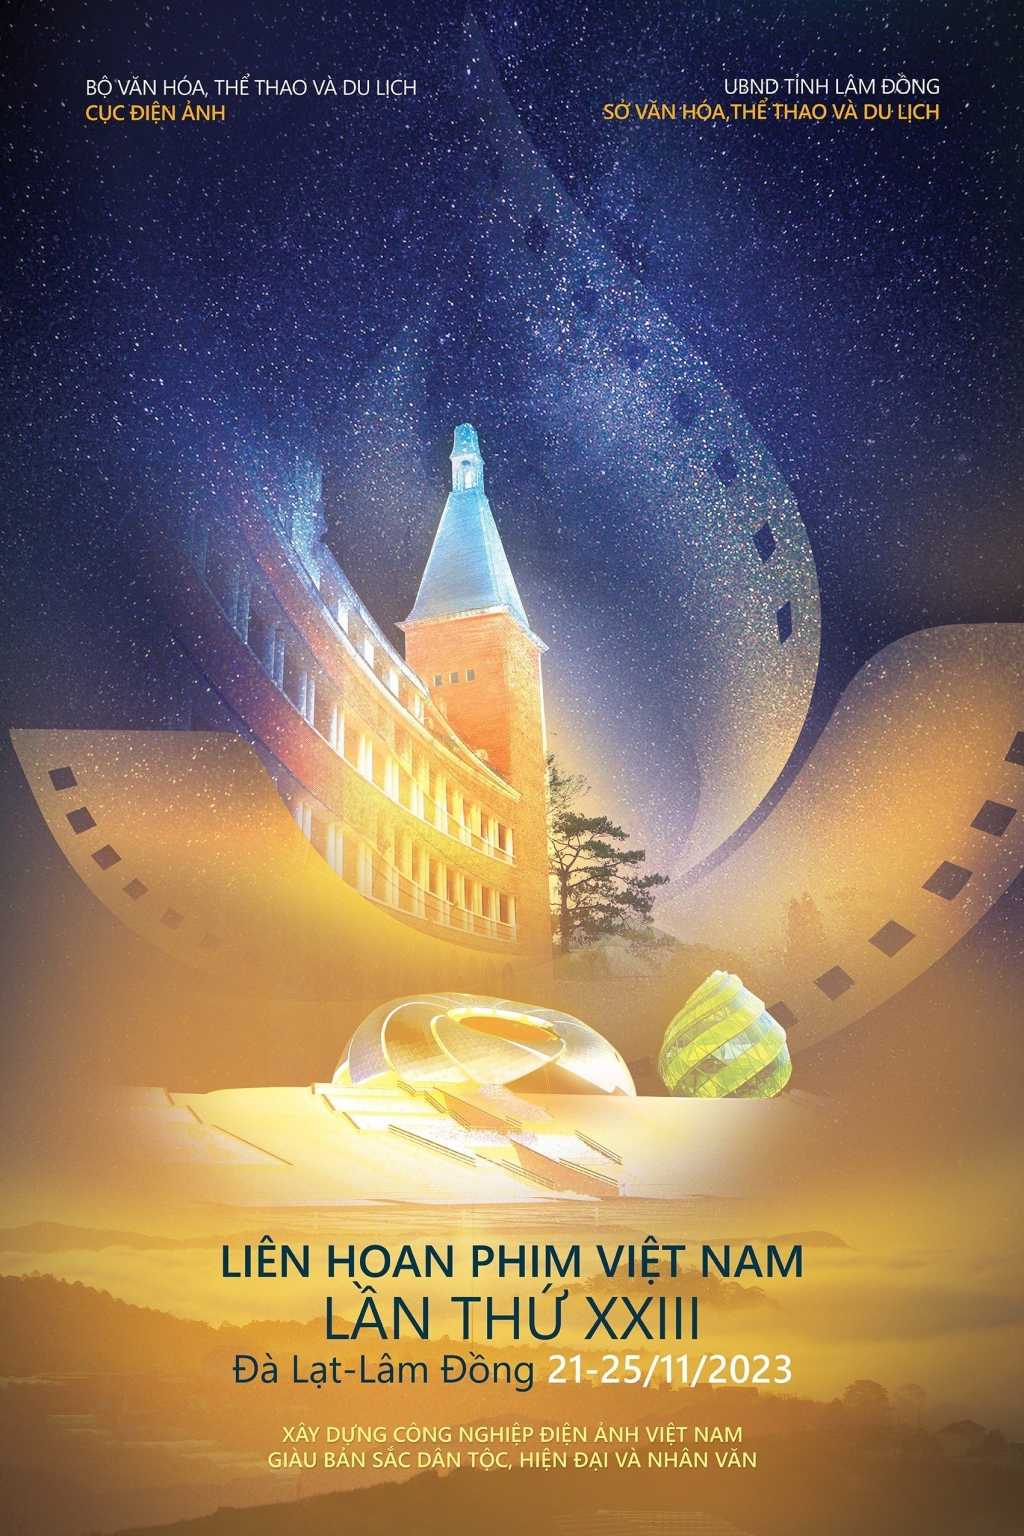 Nghệ sĩ điện ảnh và xúc cảm bồi hồi về Liên hoan phim Việt Nam lần thứ XXIII